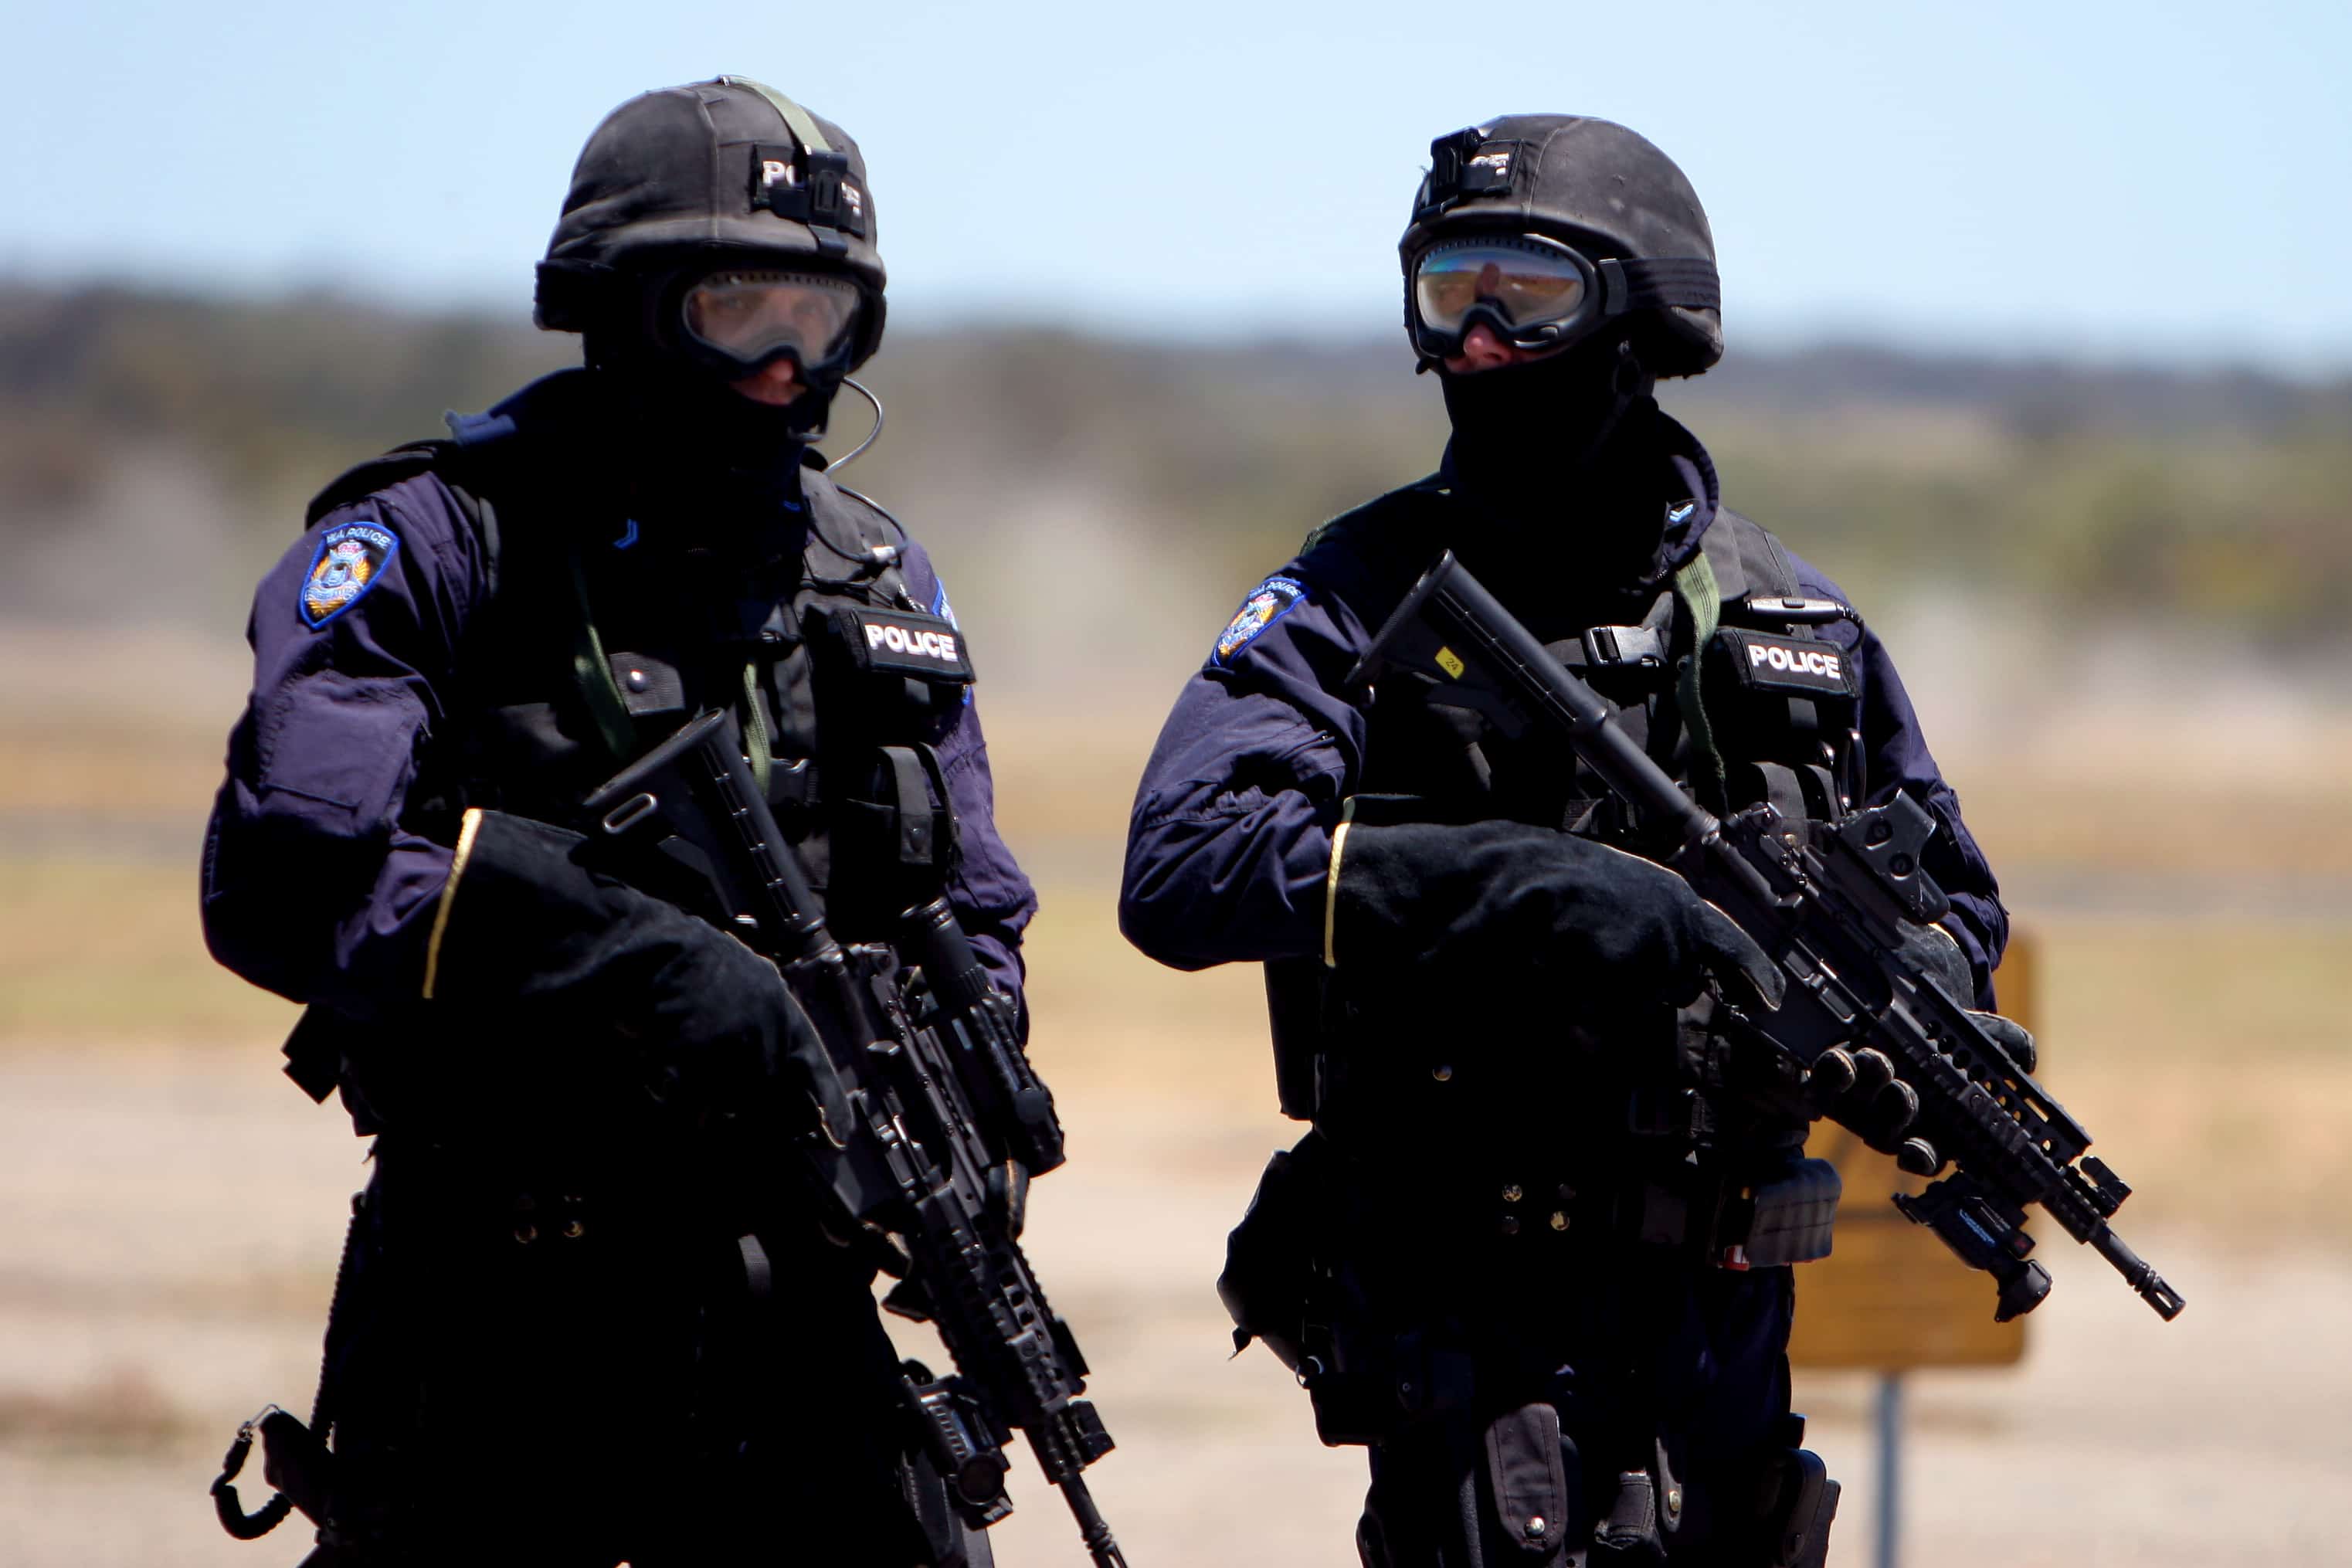 Úc: Mang vũ khí vào cây xăng, hai anh em lĩnh ngay “kẹo đồng” của cảnh sát - 1